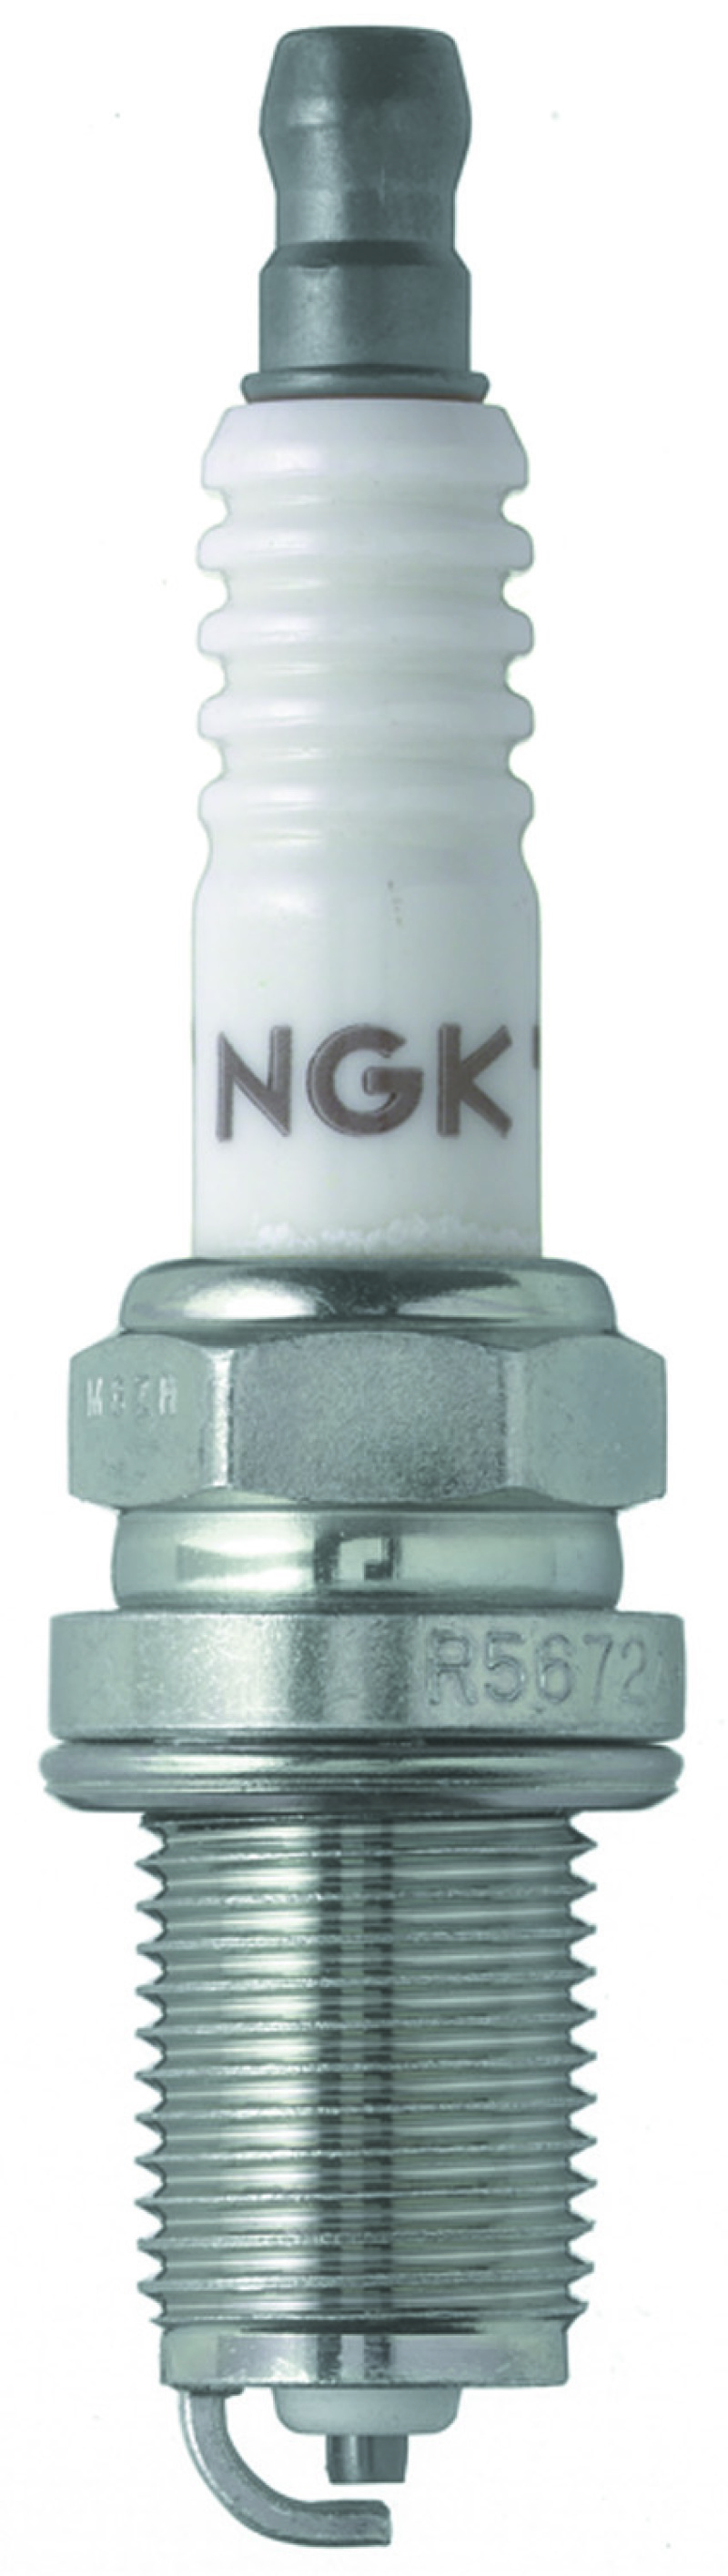 NGK Racing Spark Plug Box of 4 (R5672A-8) - 7173